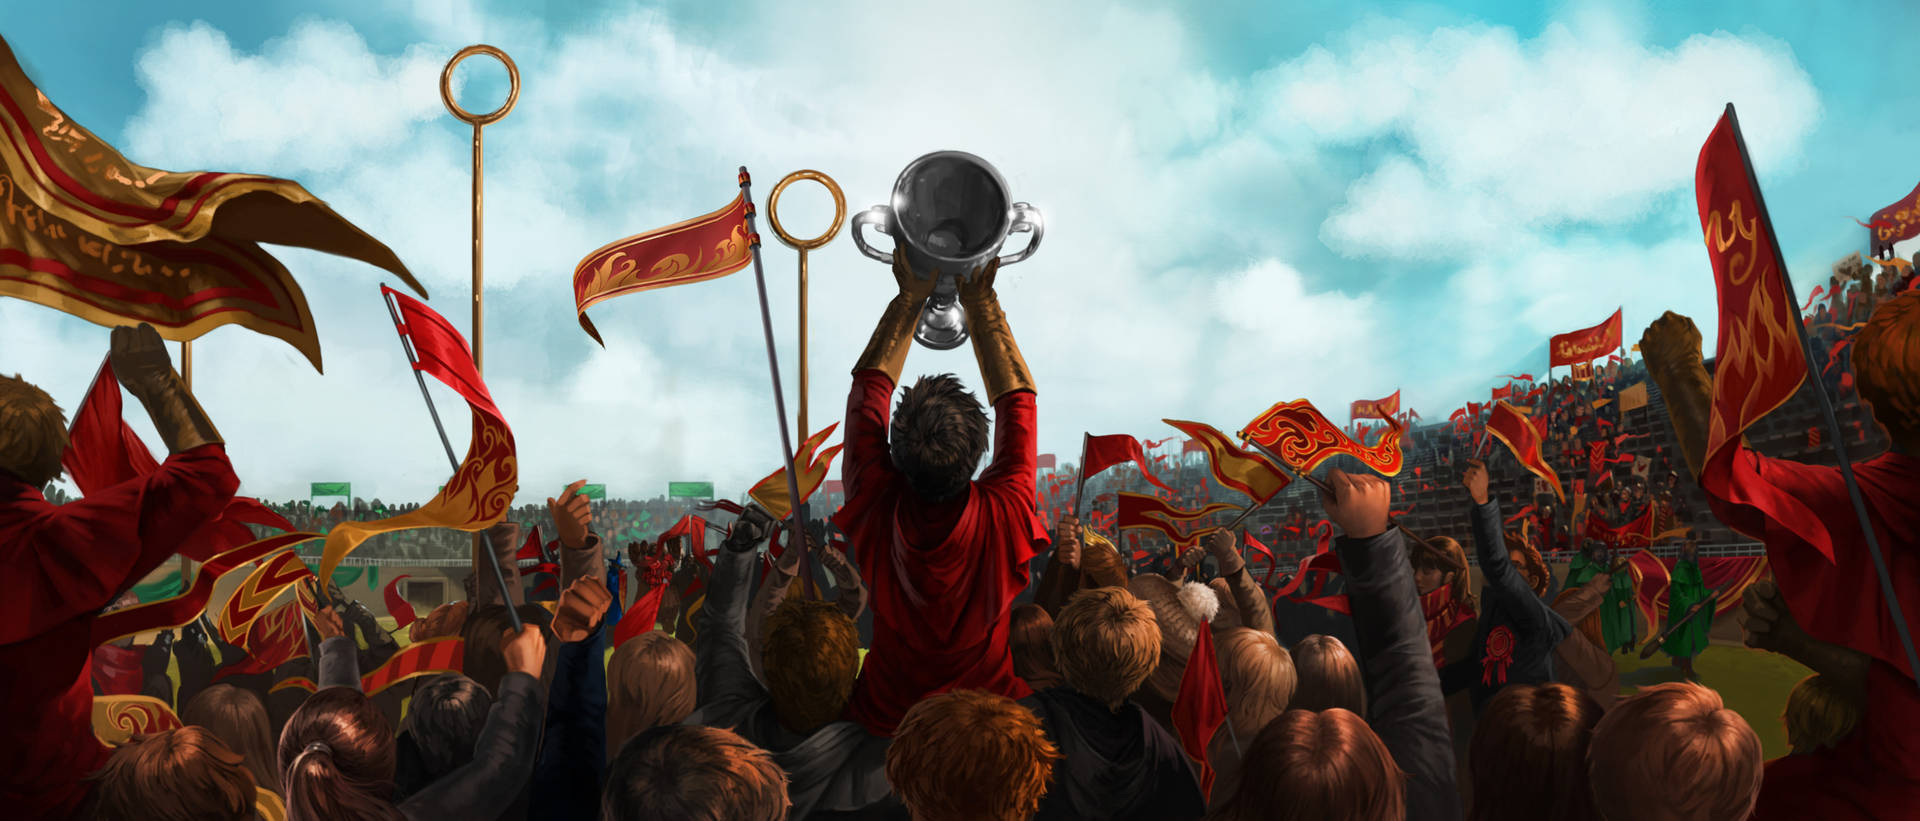 Gryffindor Quidditch Victory Celebration Background